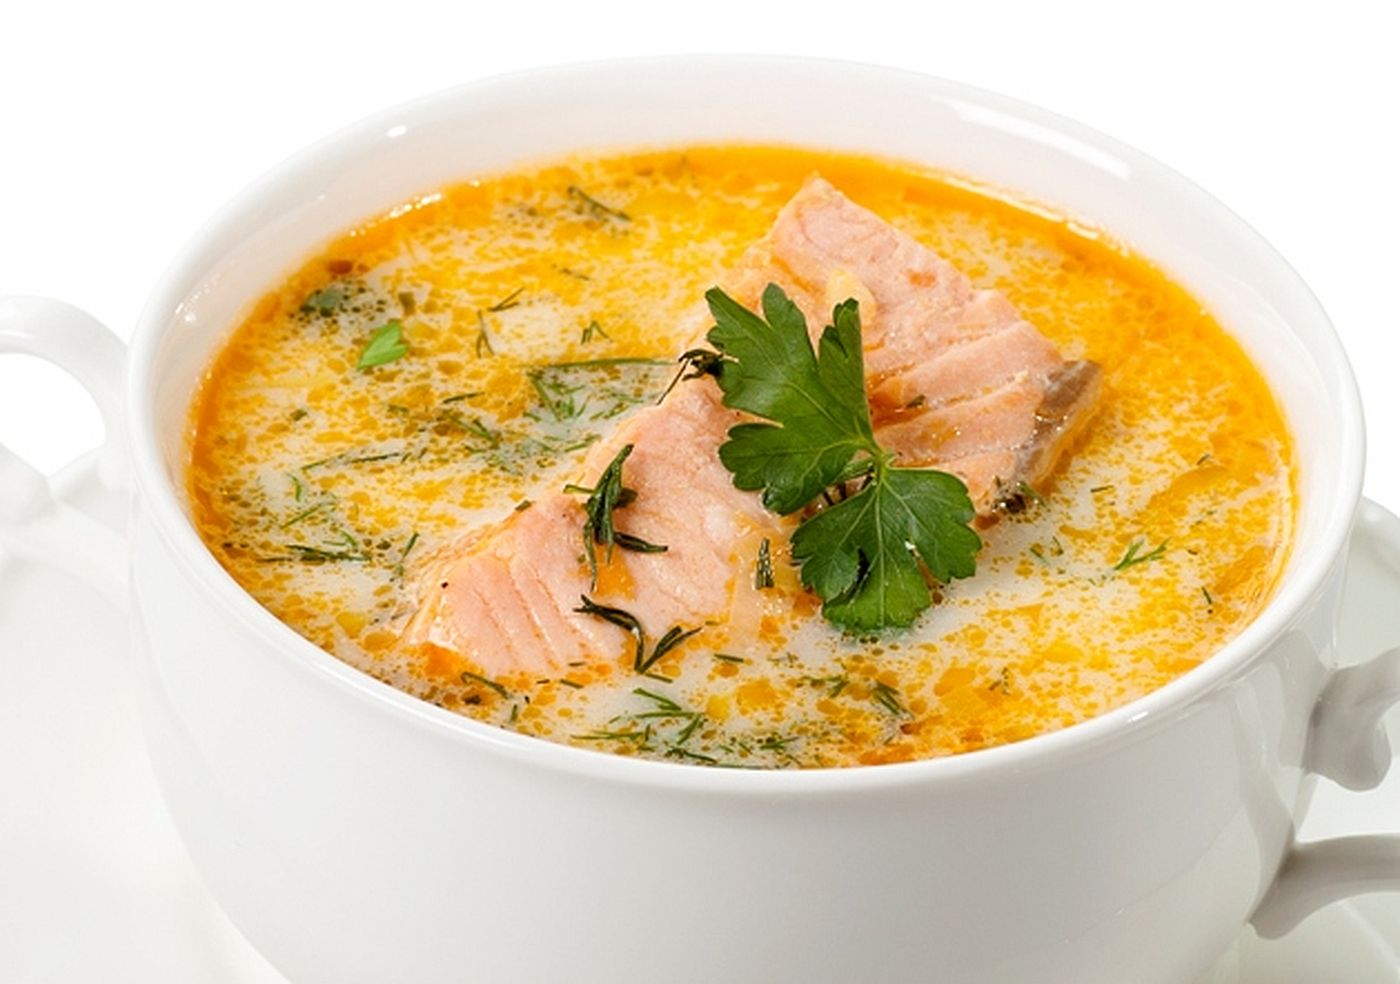 Supa de somon, gustoasă, ușoară și răcoritoare, excelentă când e dezlegare la pește